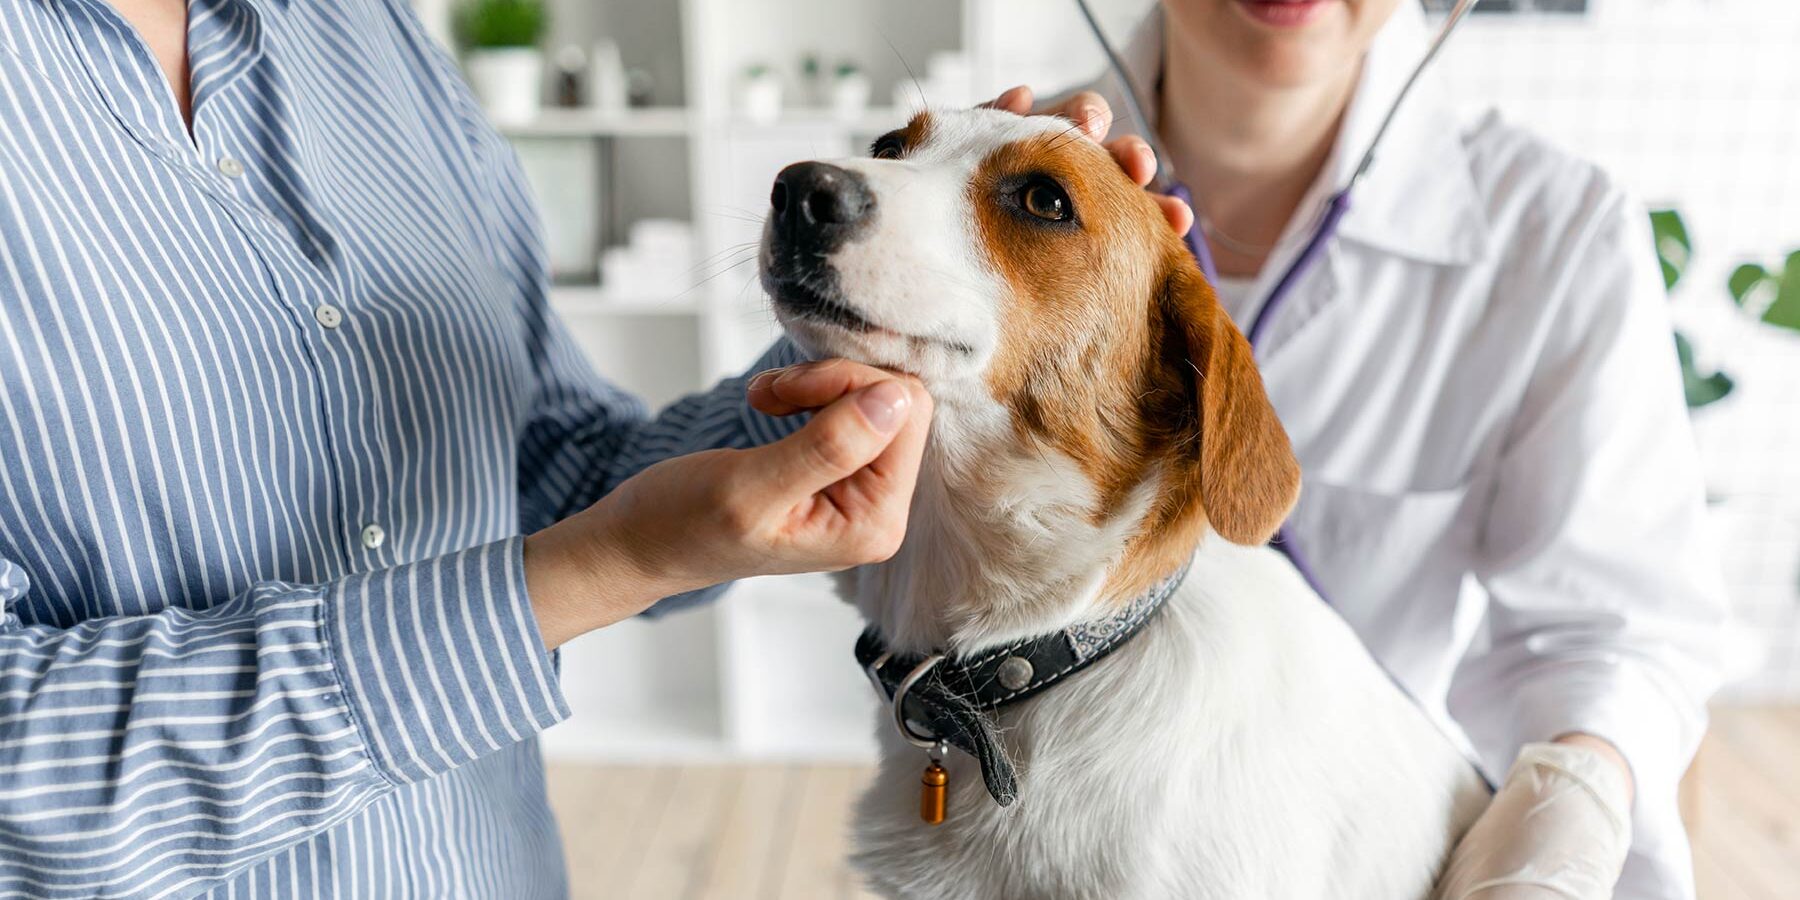 veterinarian checks dog's vitals